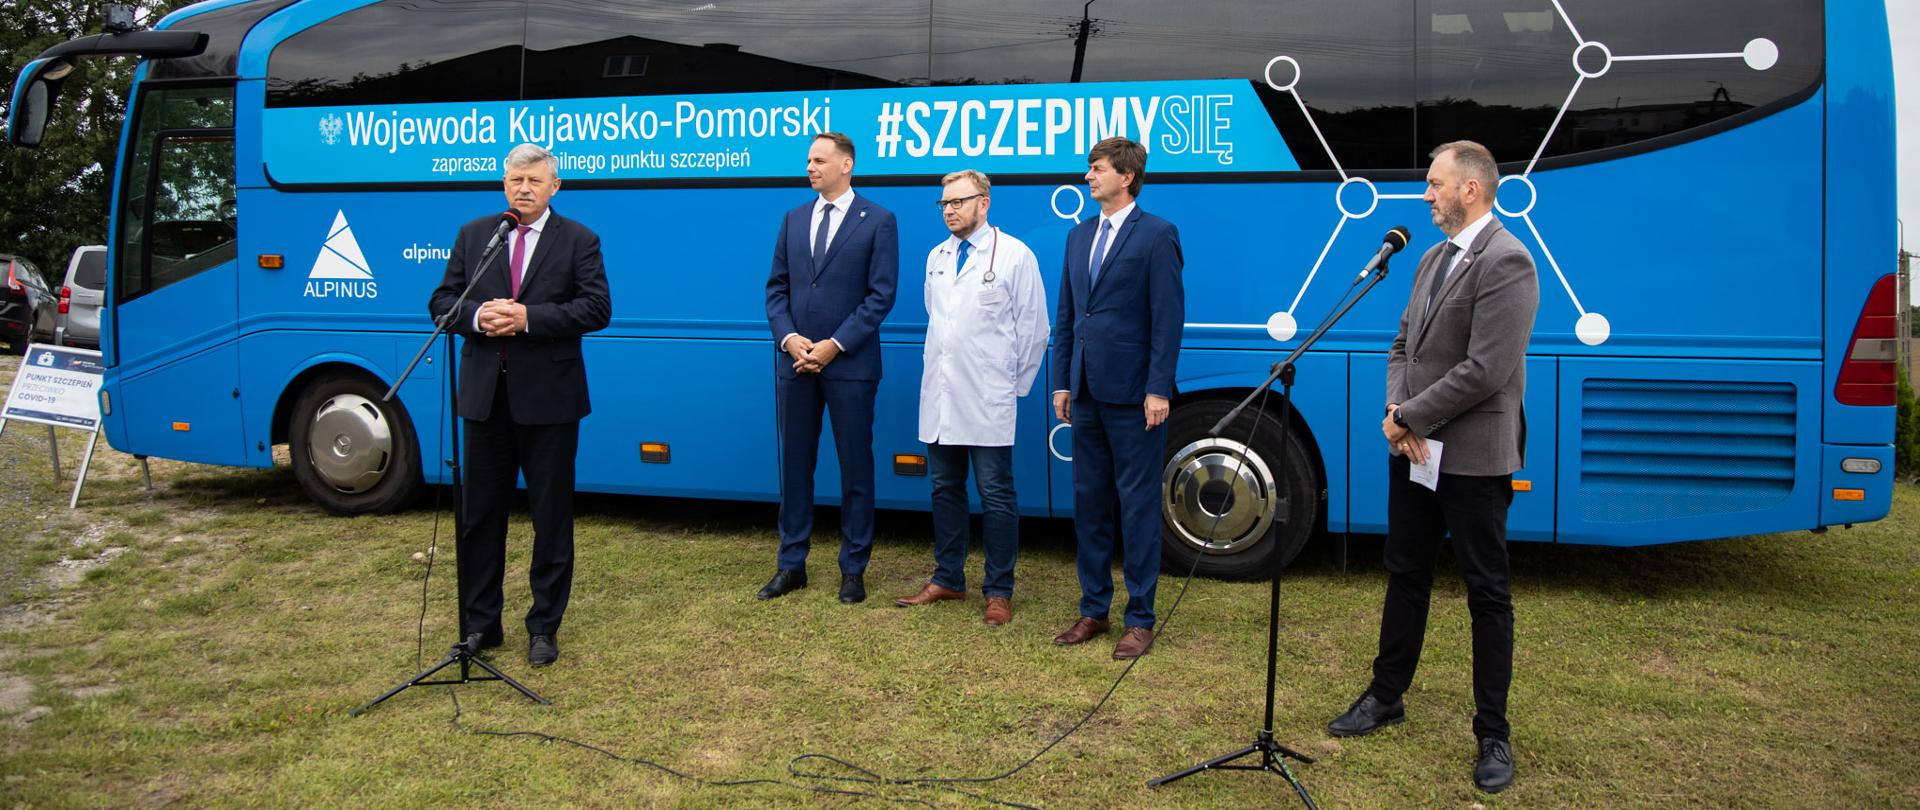 niebieski autobus, konferencja prasowa, pięciu mężczyzn